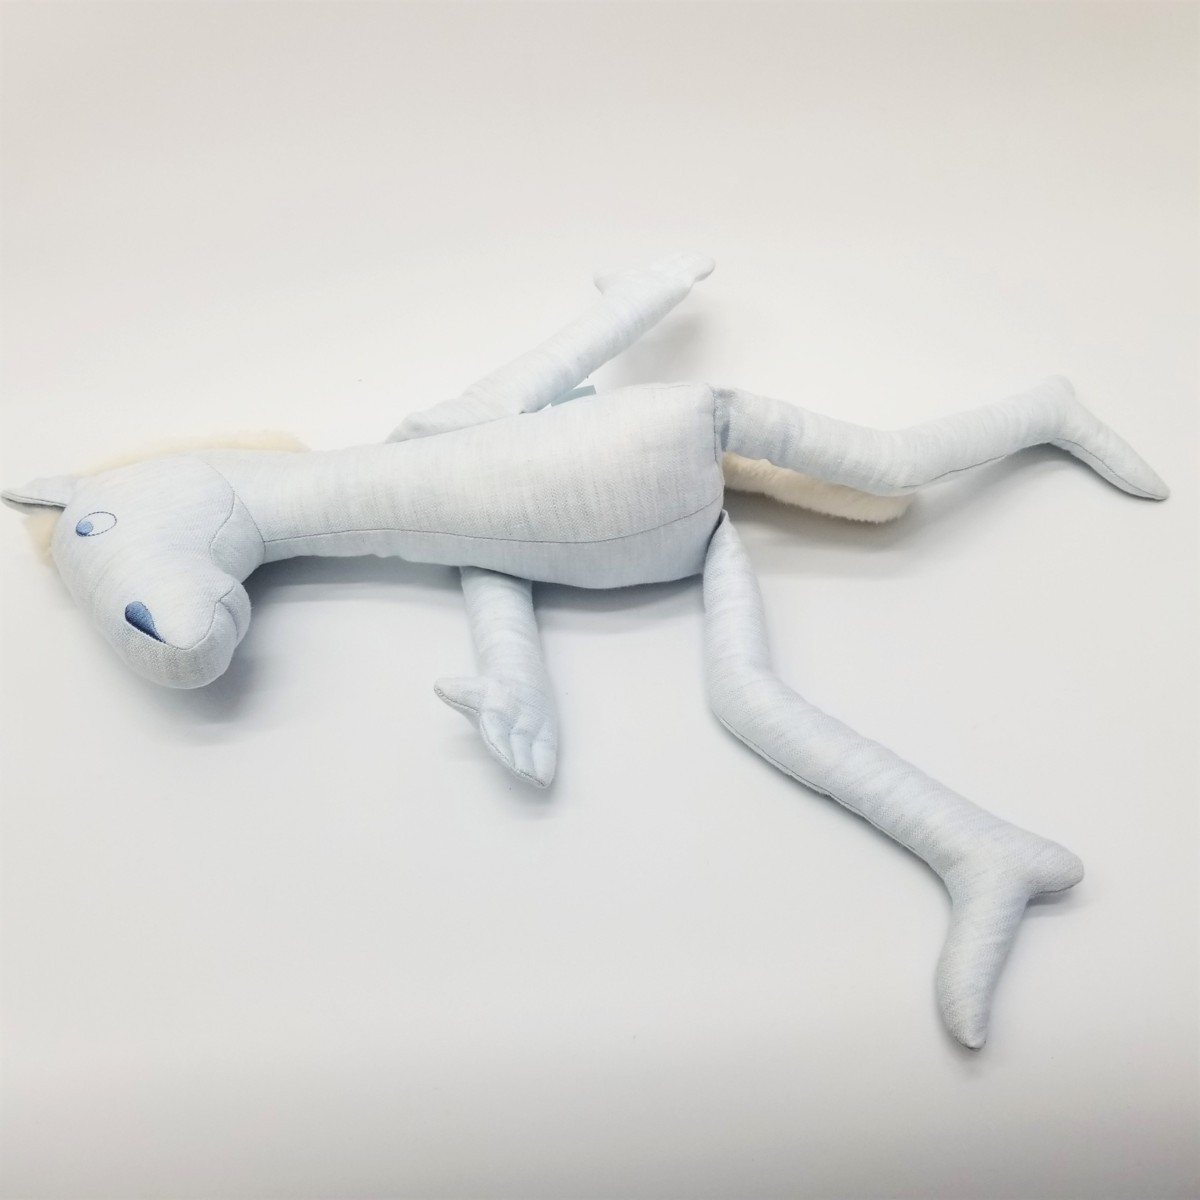  Hermes HERMES pot yok лошадь мягкая игрушка редкий голубой лошадь игрушка 